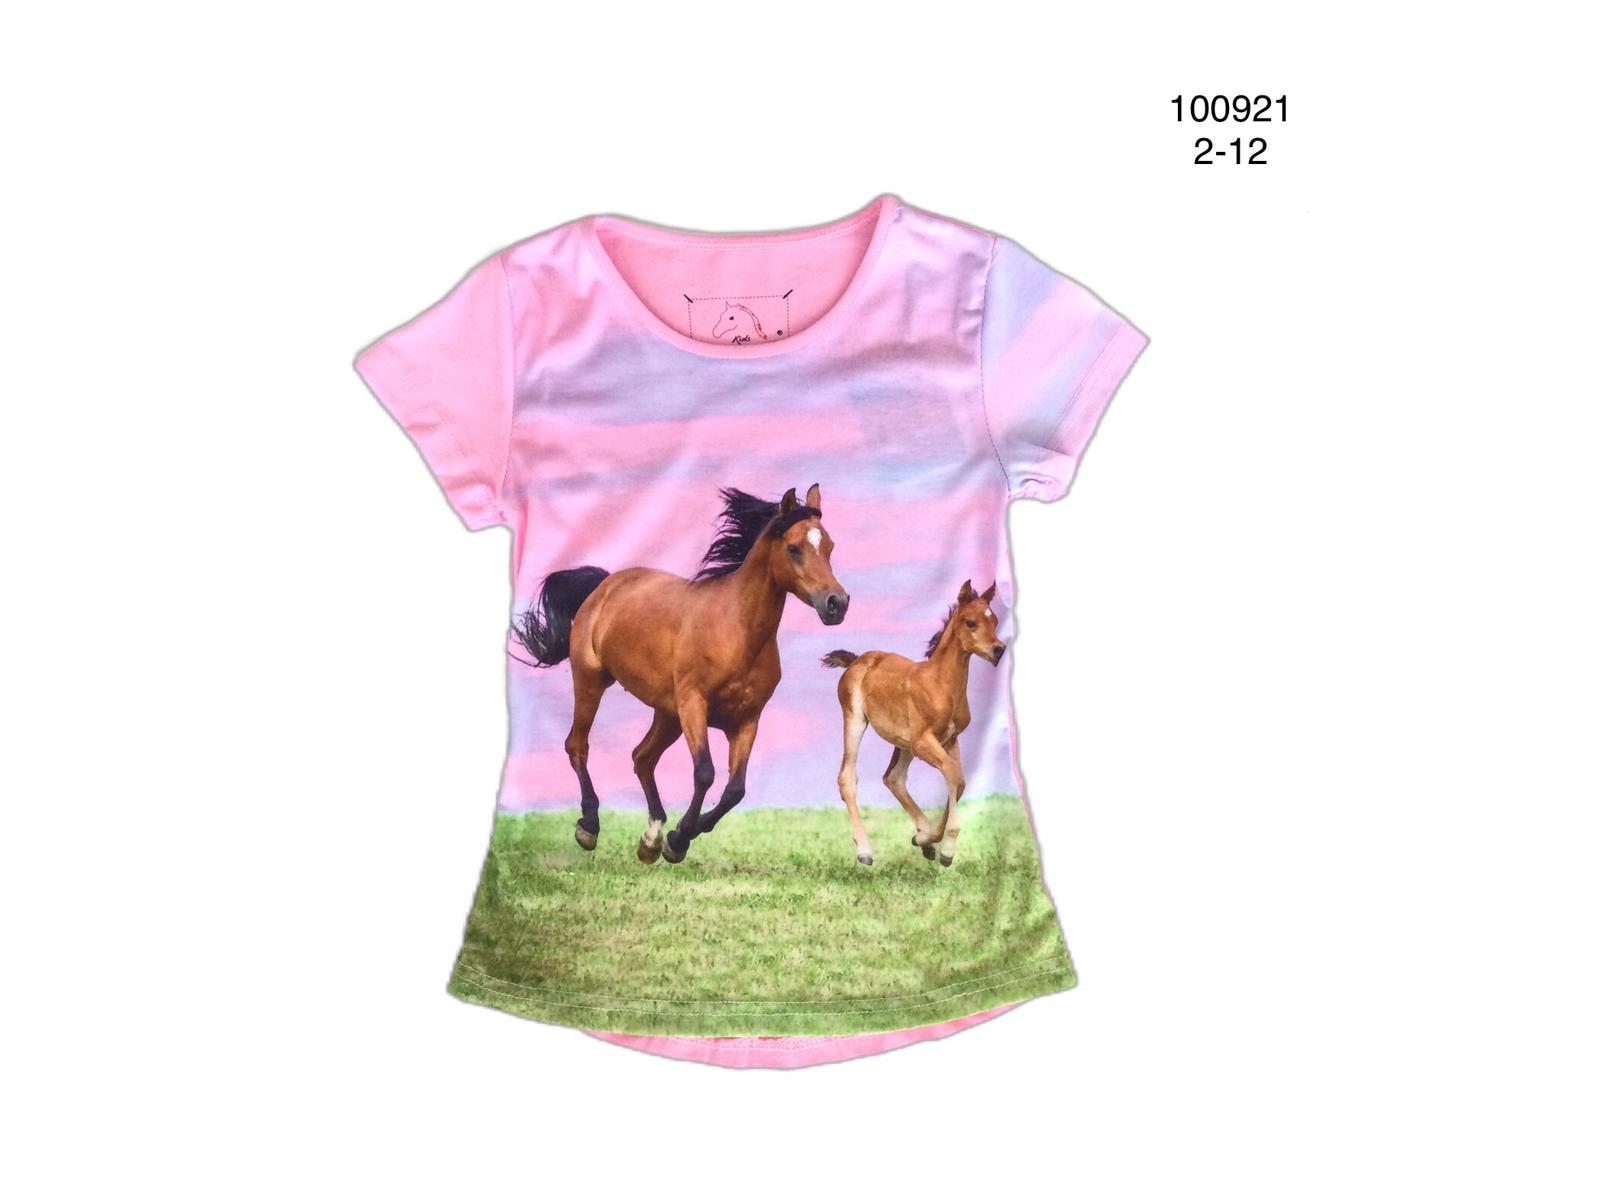 Roze shirt met paard en veulen